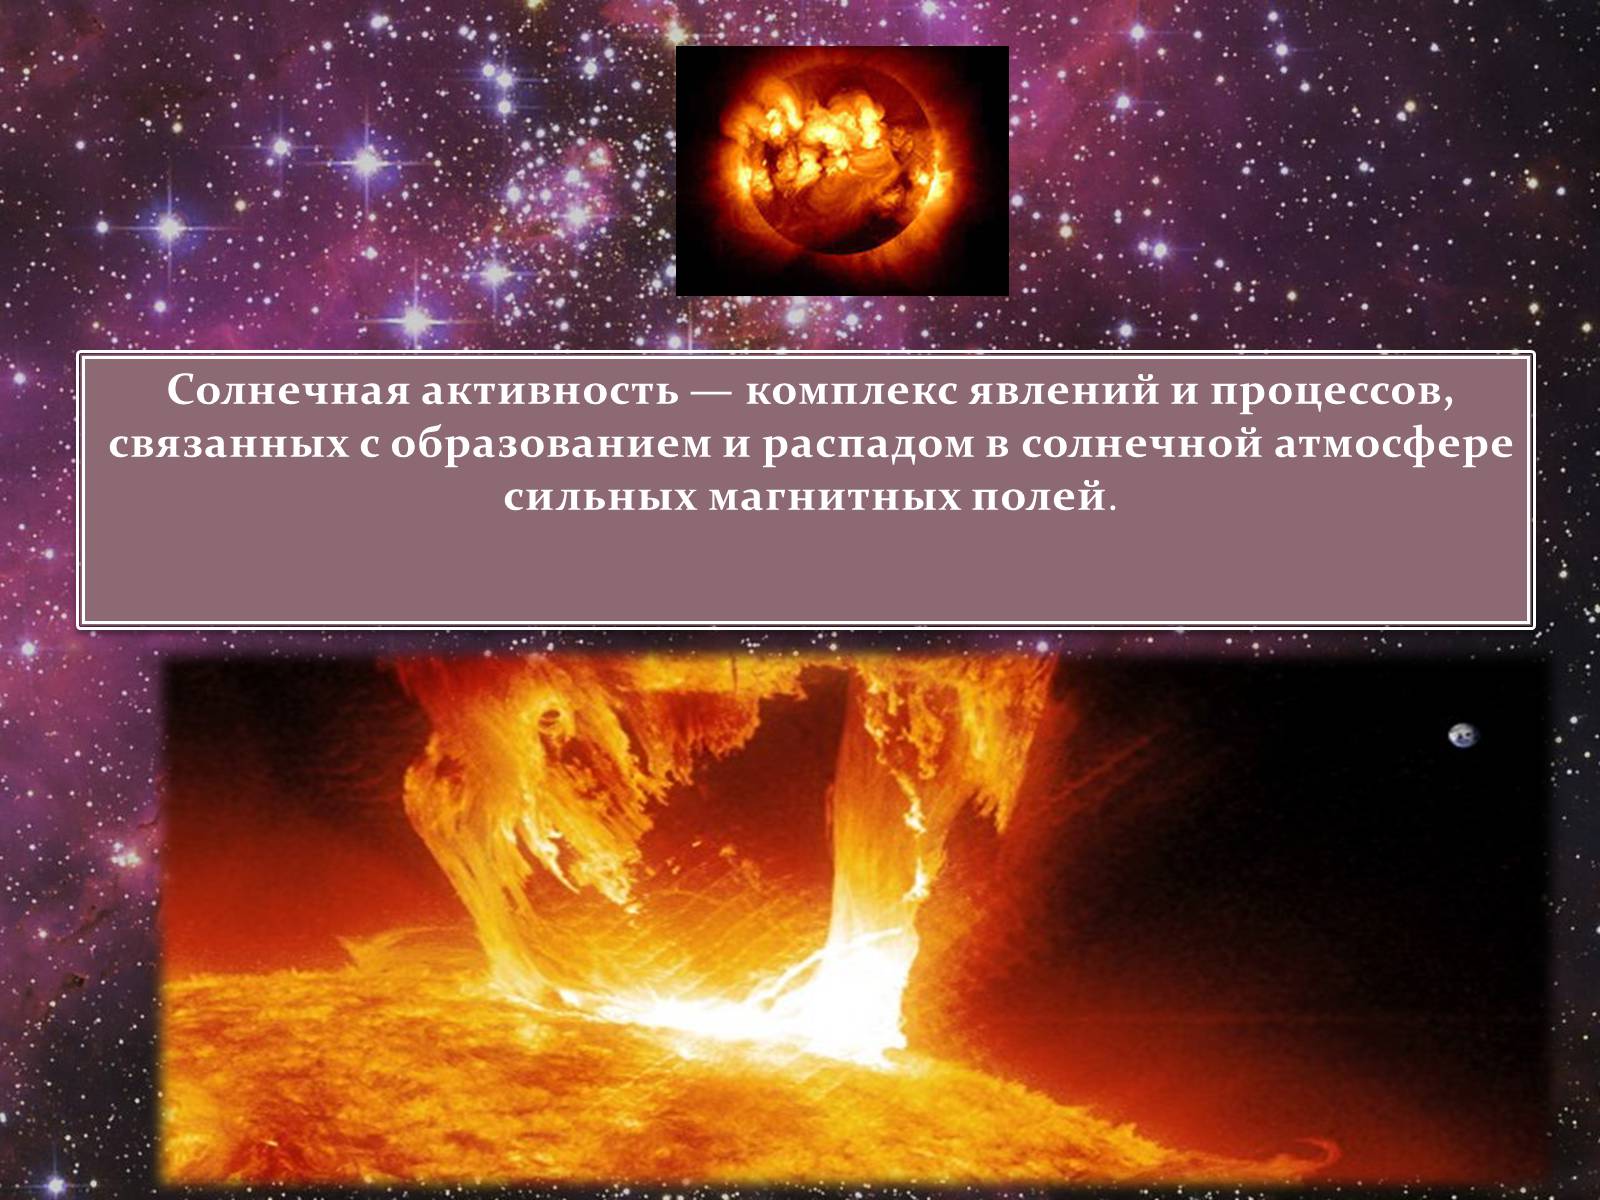 Солнечная атмосфера и солнечная активность. Солнечная активность. Явления солнечной активности. Солнечная атмосфера это комплекс явлений и процессов. Явления на земле связанные с солнечной активностью.